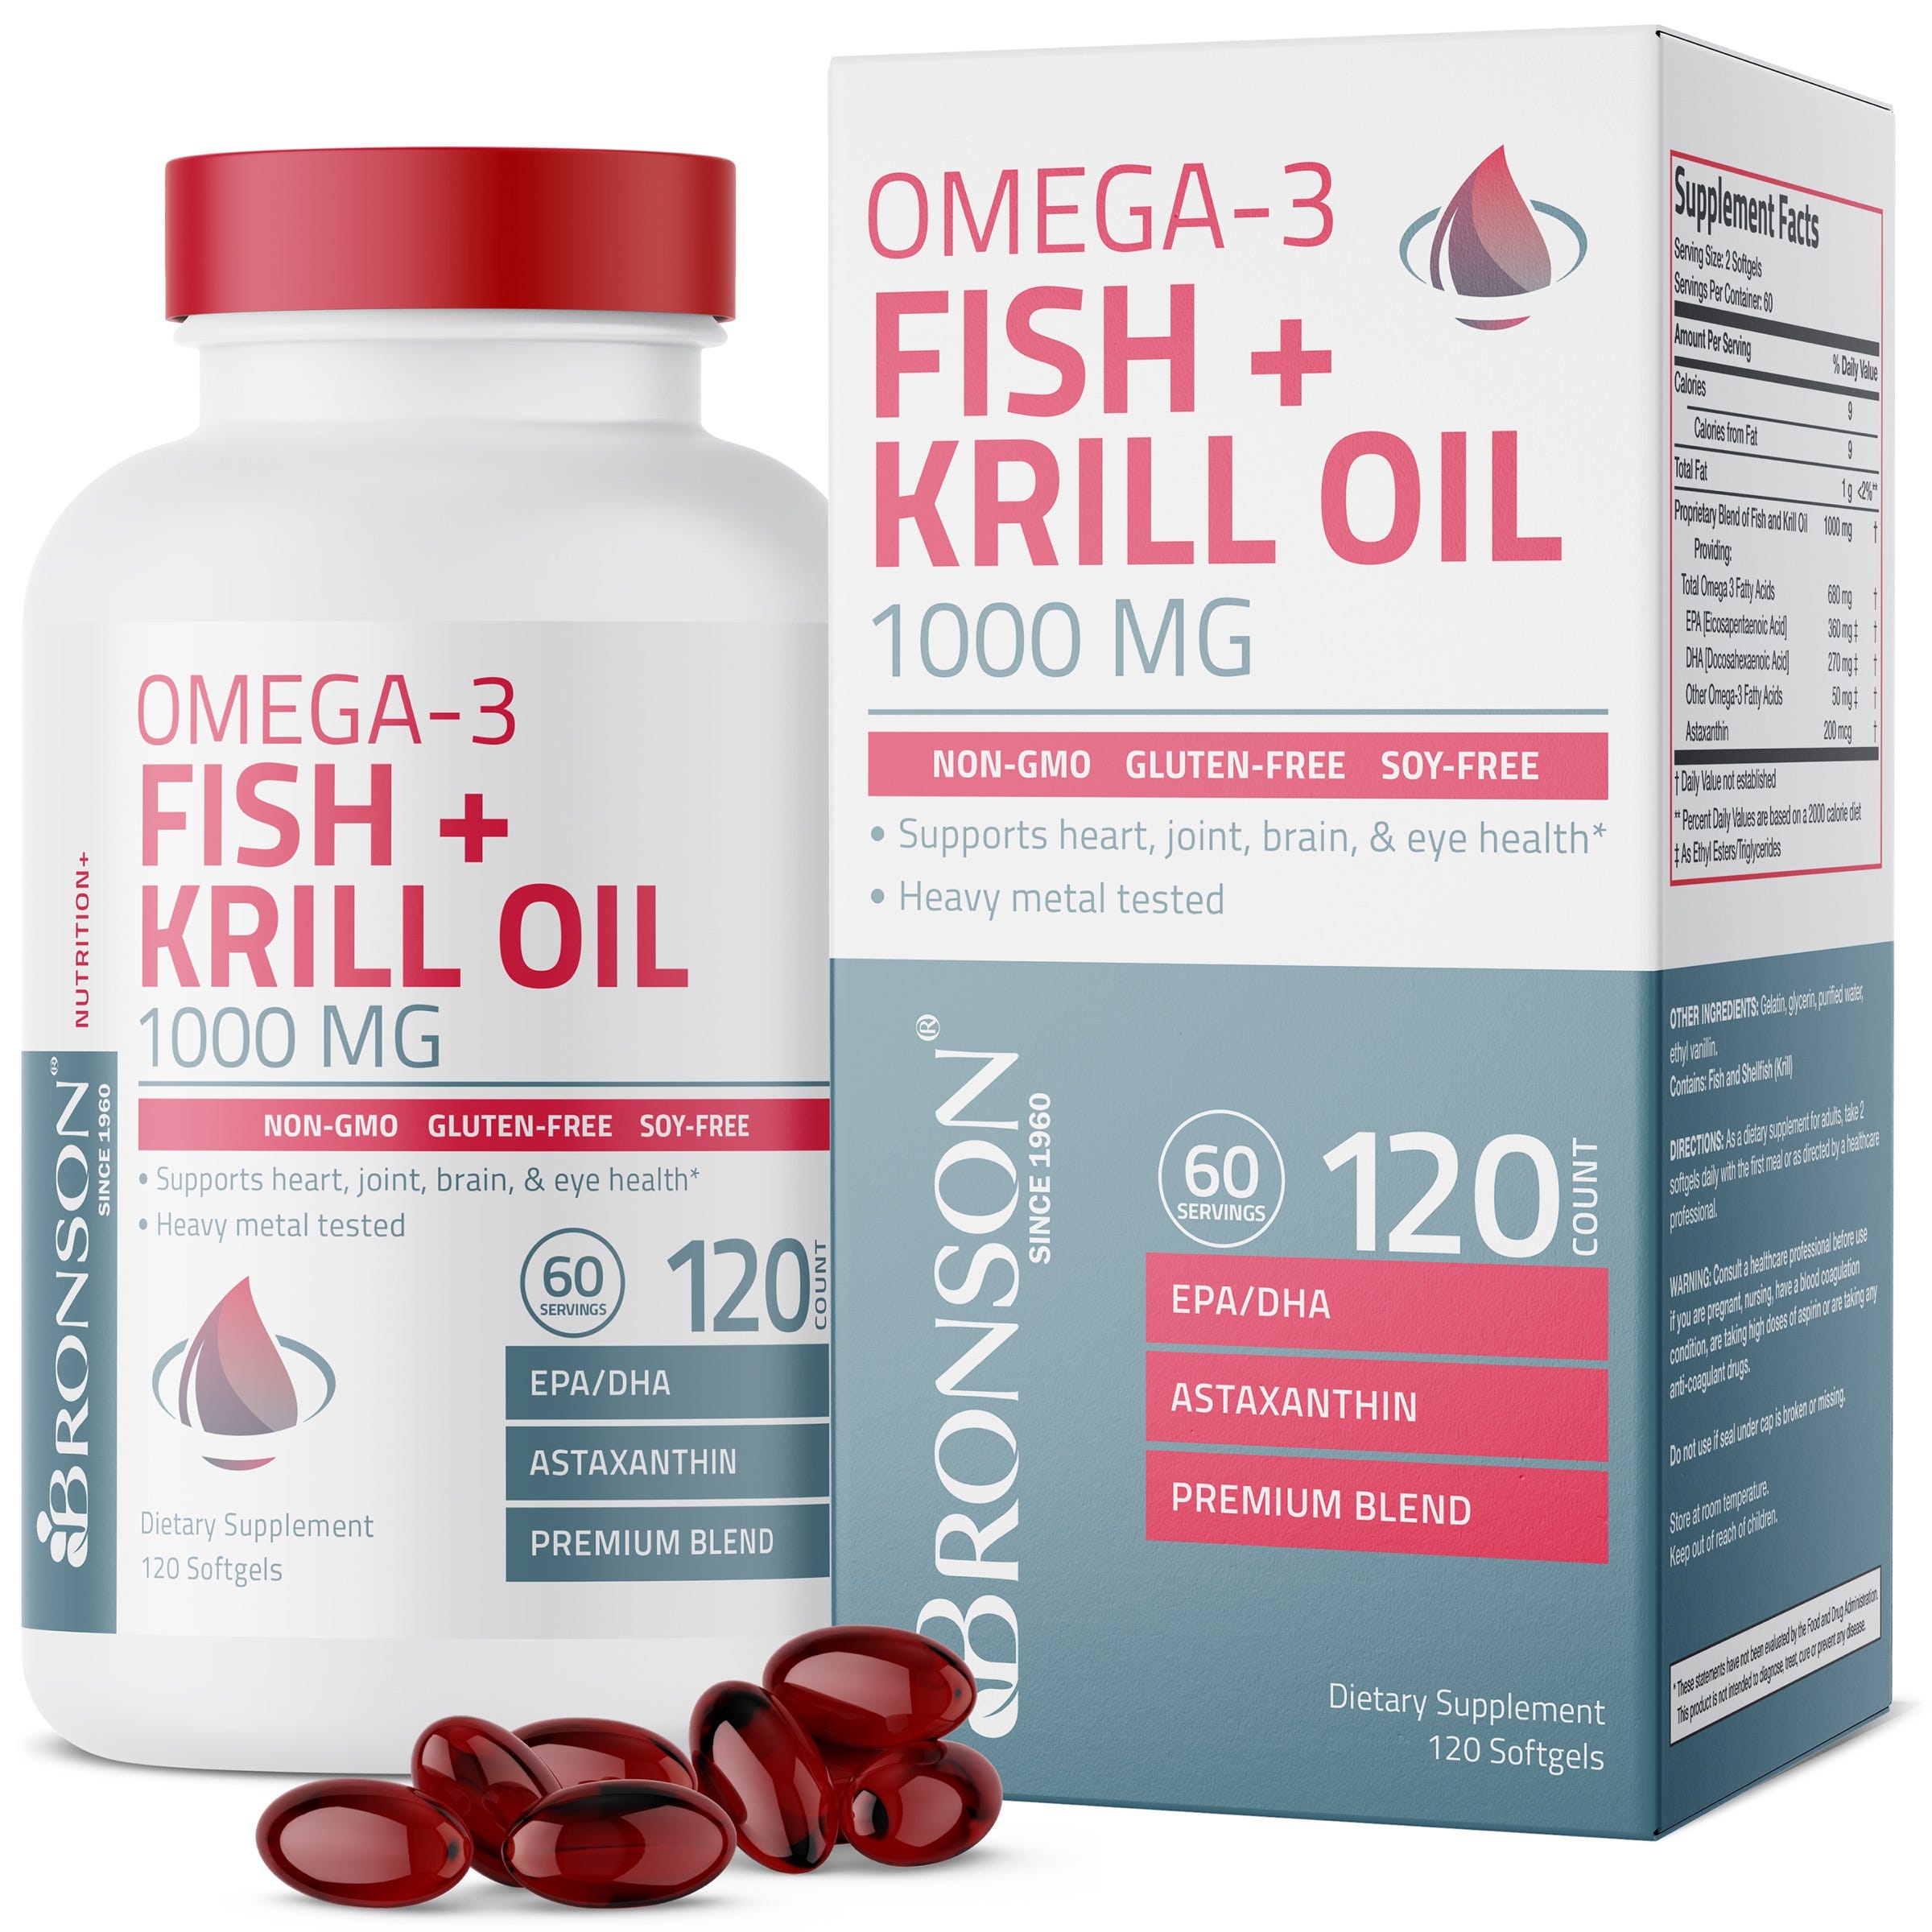 Omega-3 Fish + Krill Oil 1000 MG 120 Softgels